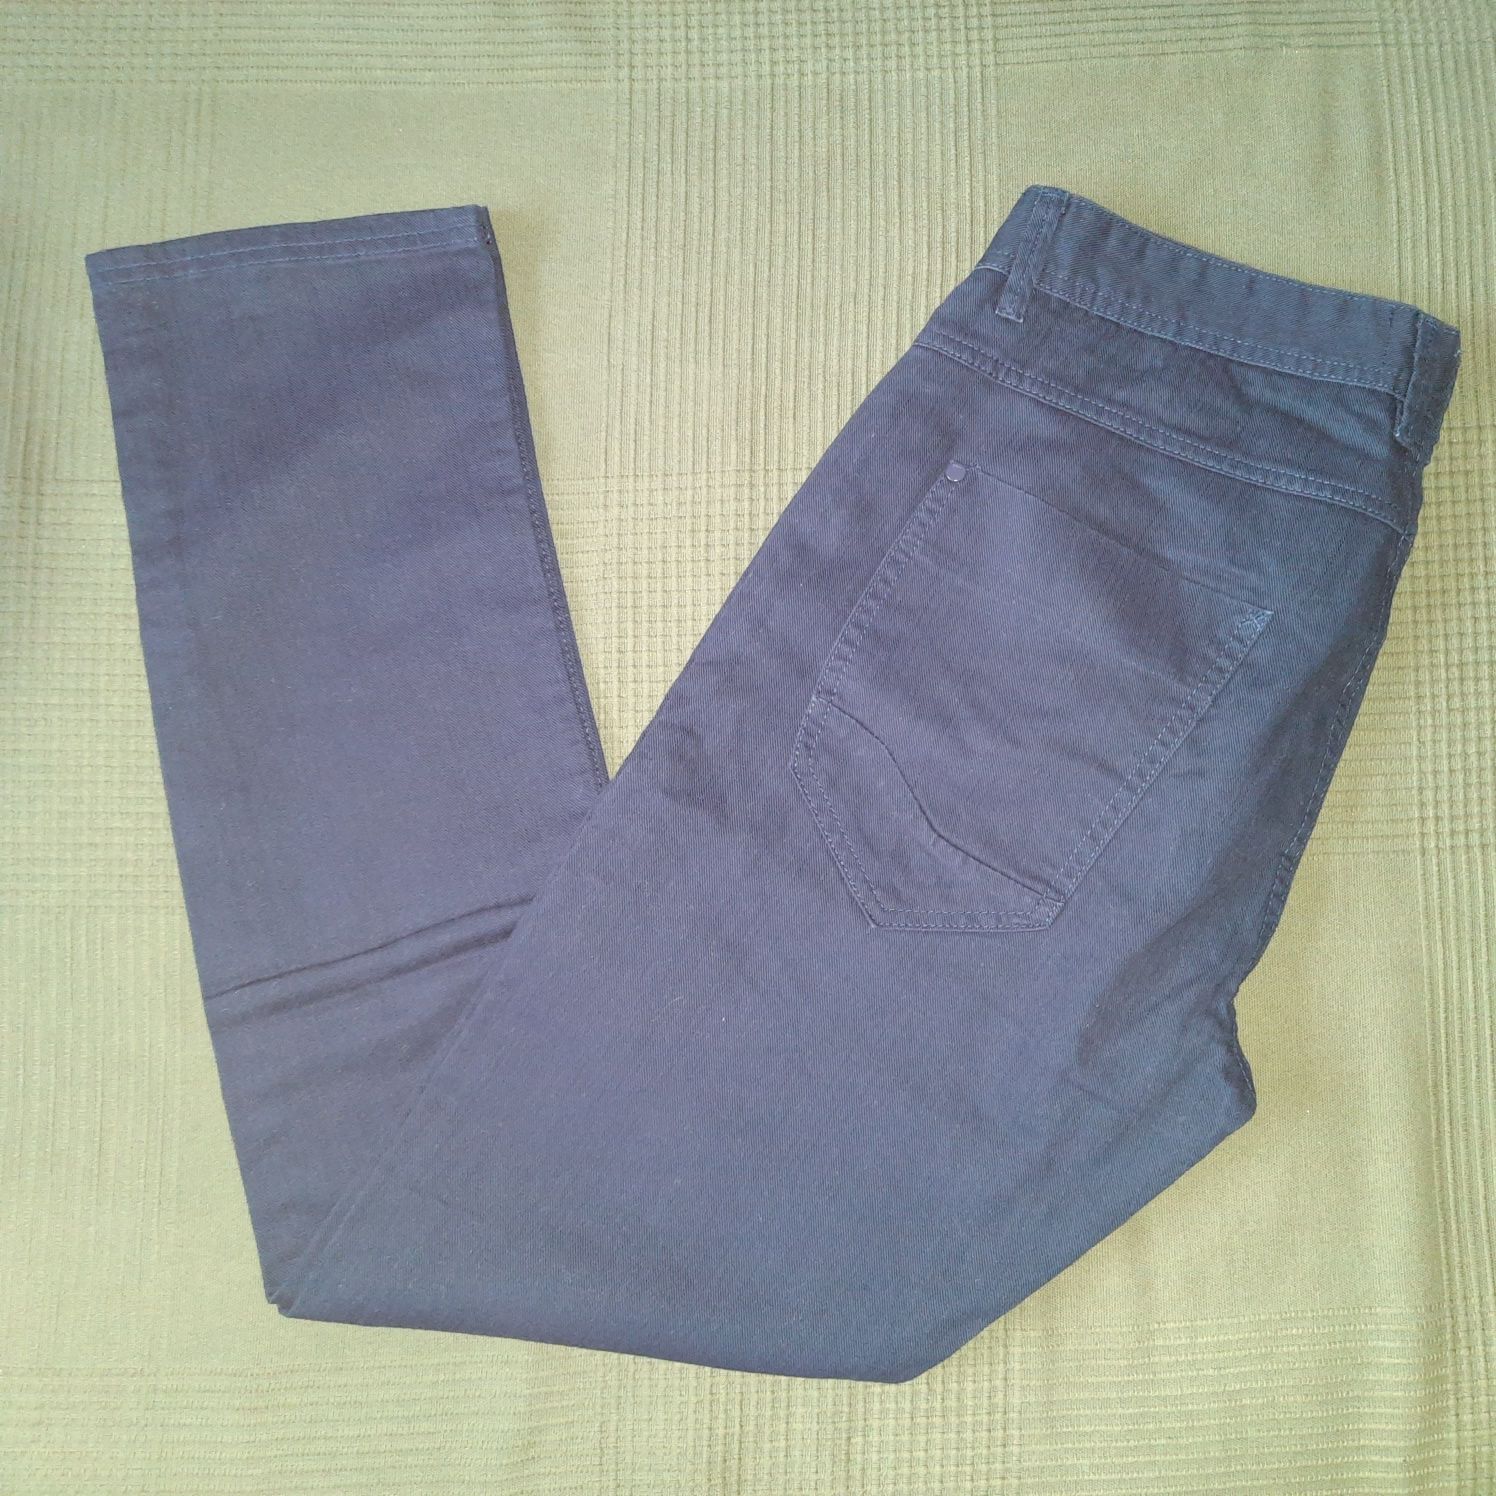 Spodnie męskie dzinsy jeansy granatowe r 32 cropp